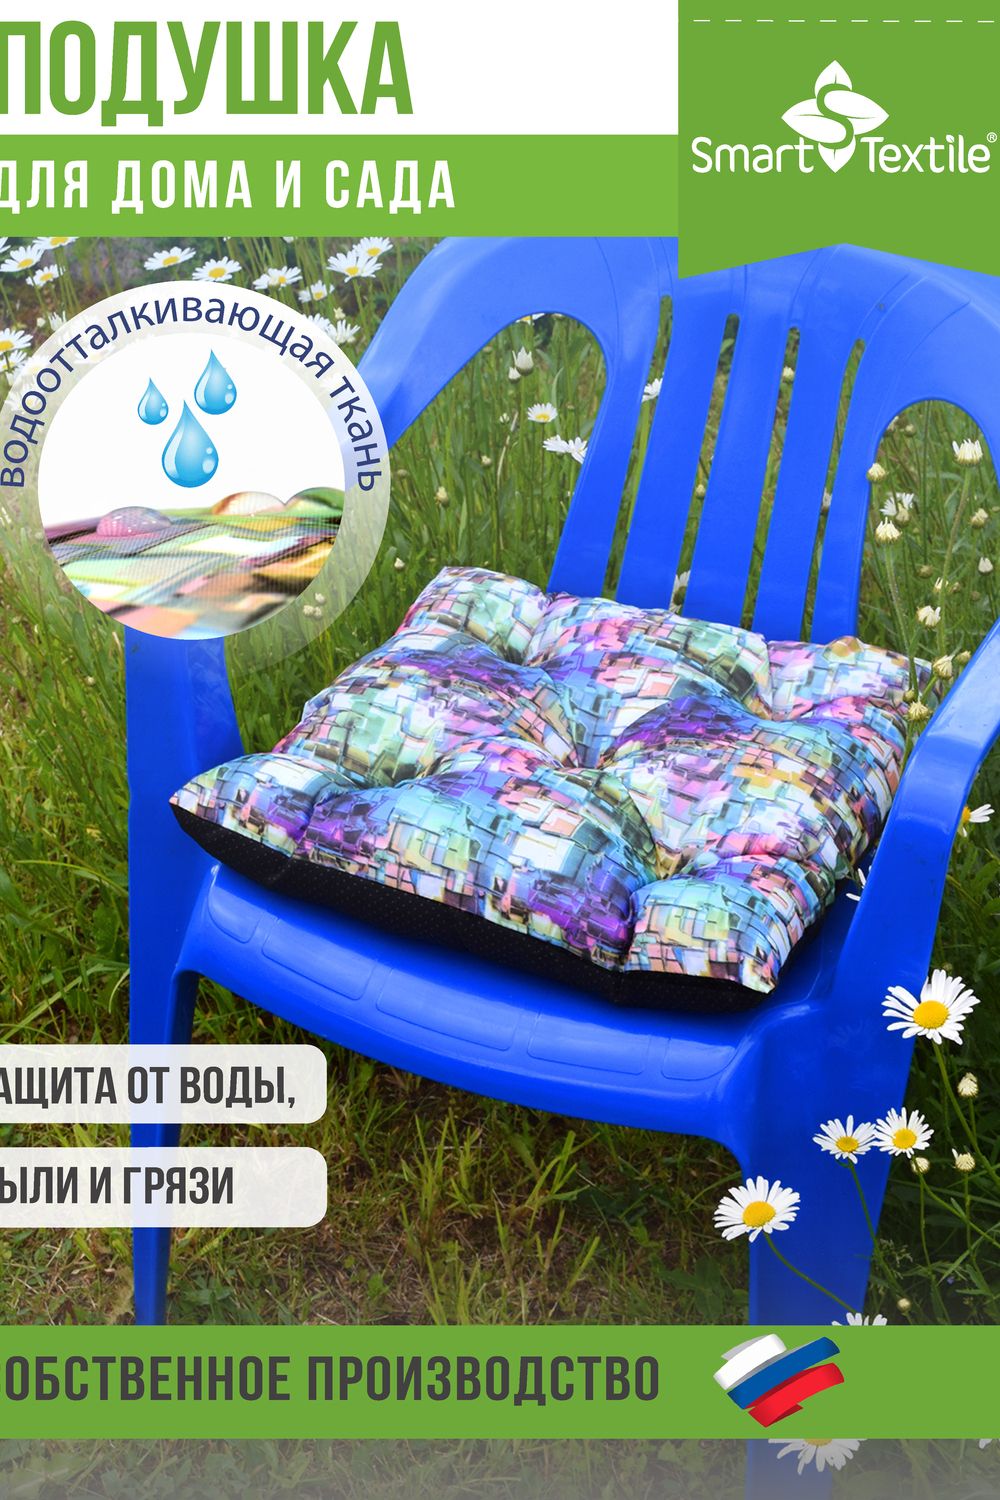 Садовая подушка для сиденья Омега с завязками - мозаика